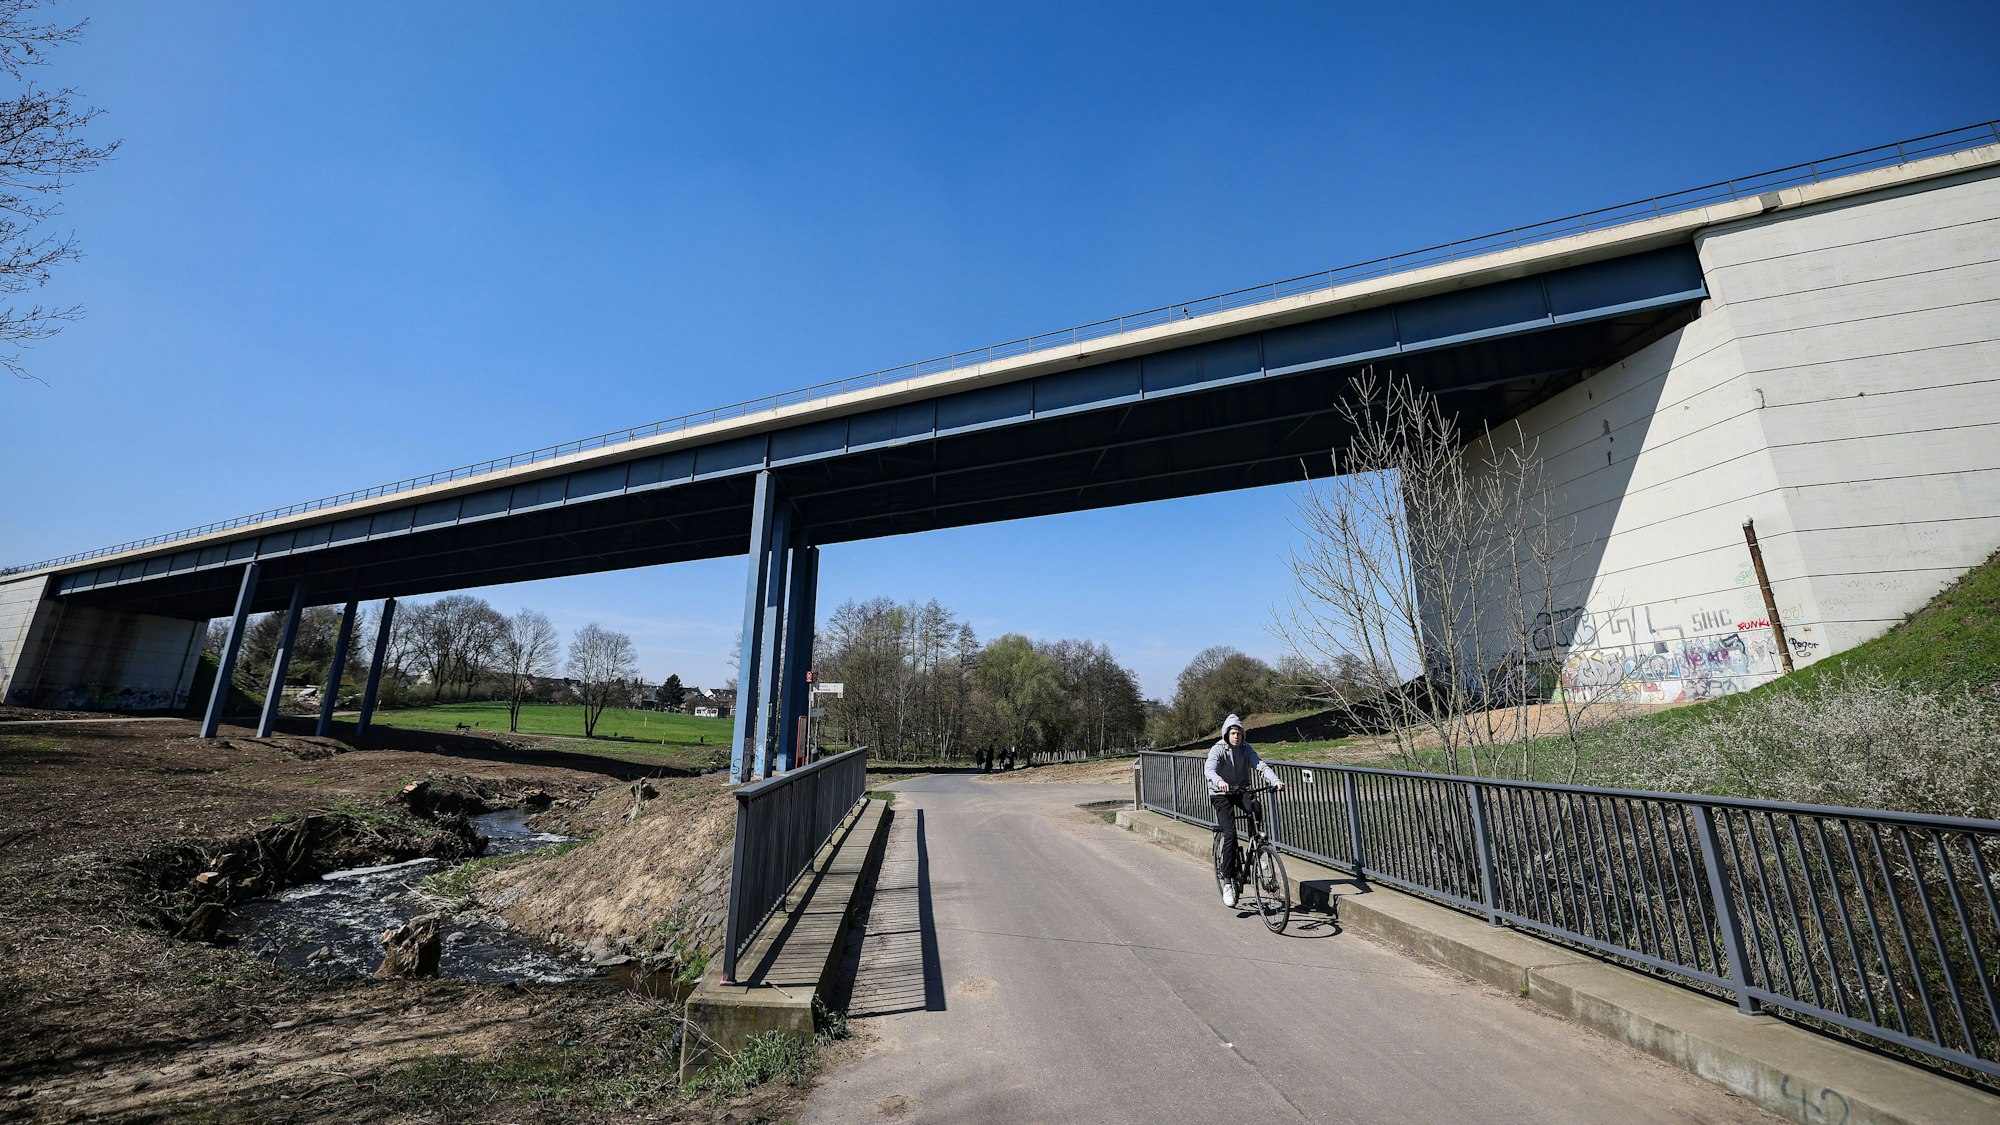 Ein seitlicher Blick auf die Haarbachtalbrücke in Aachen.Links ist ein Bach zu sehen, rechts fährt ein Radfahrer auf einem Weg.